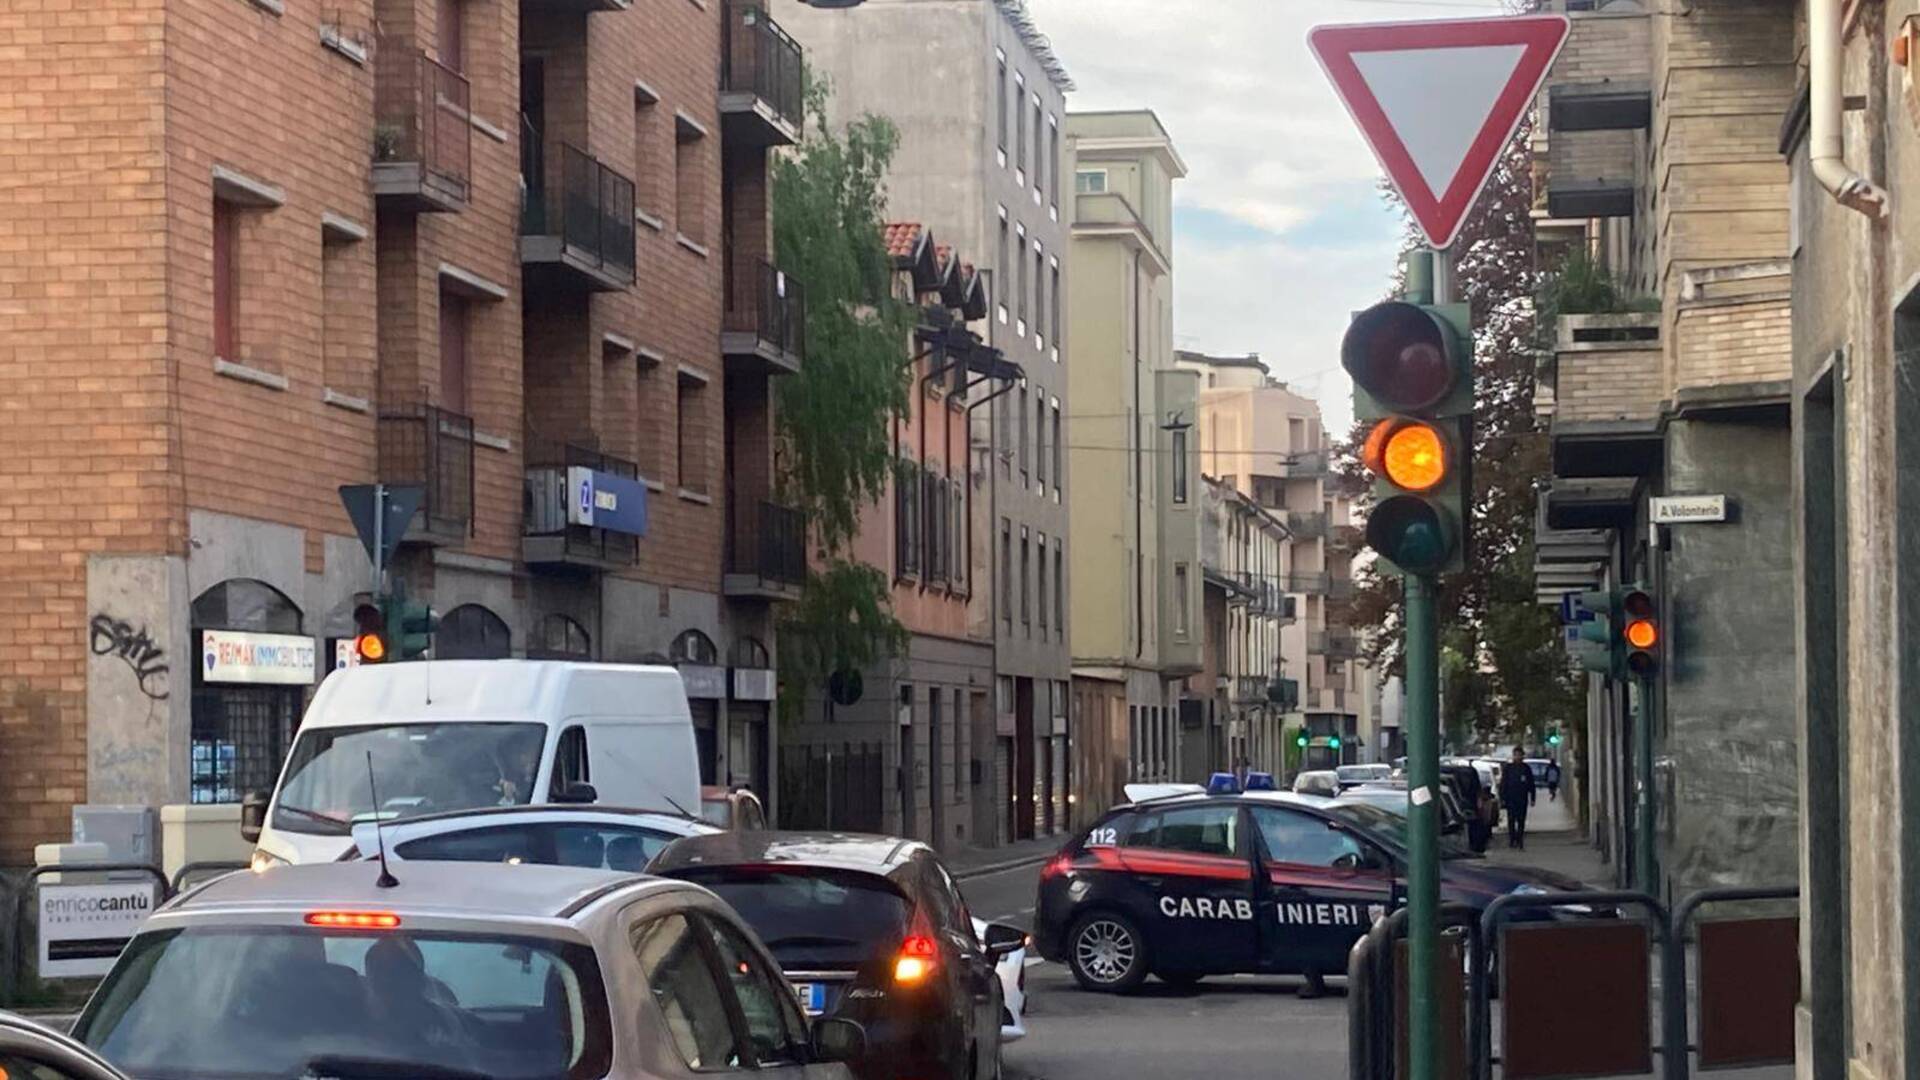 Ieri a Saronno: due incidenti all’incrocio. Escandescenze in piazza. Cane a penzoloni. Urologia laser